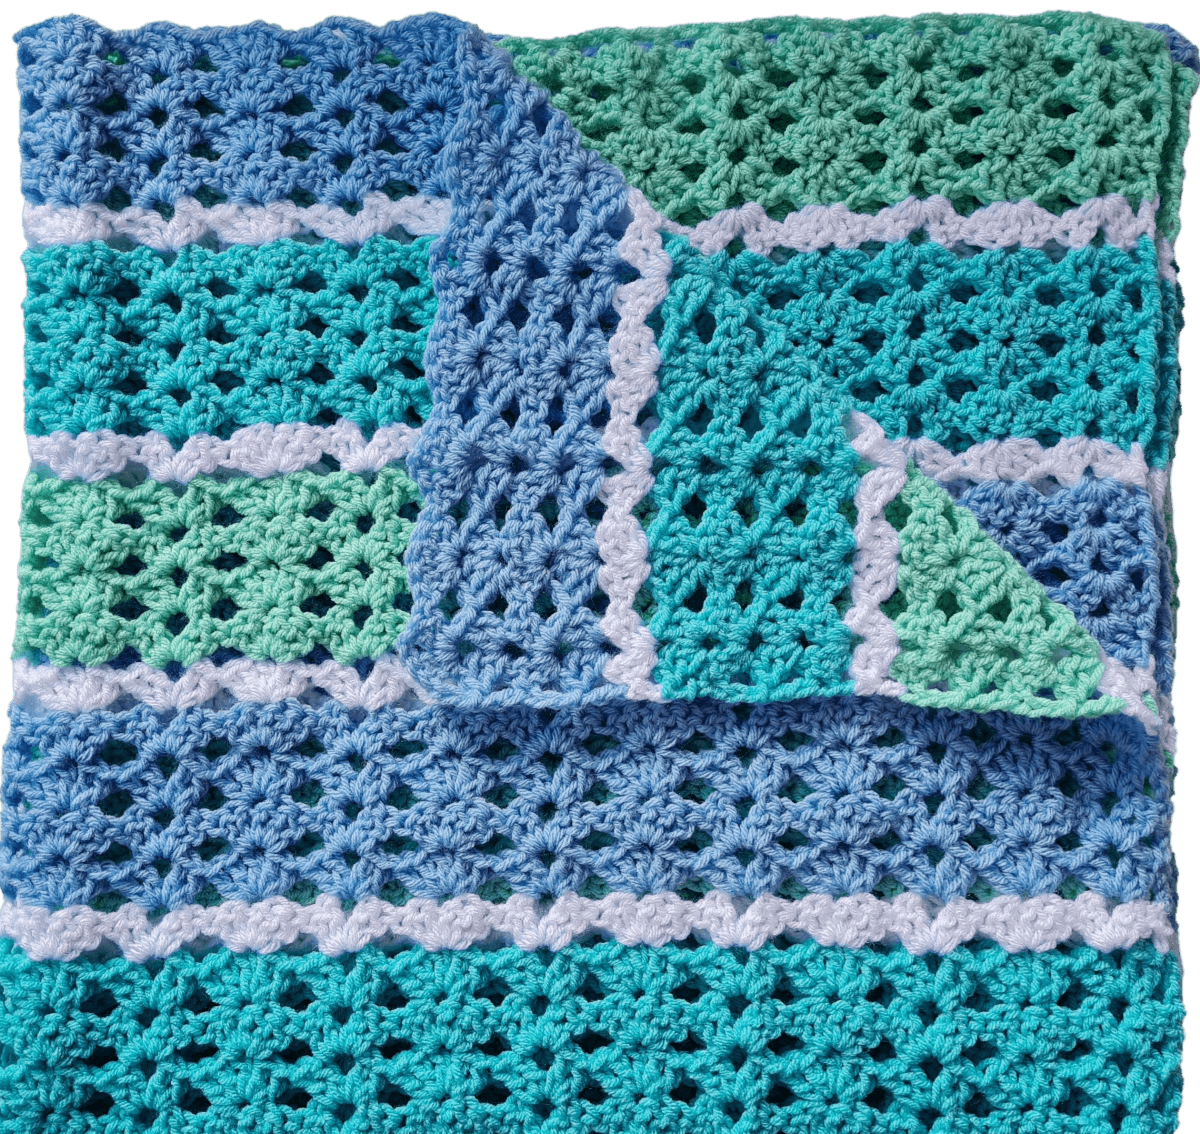 Dirty Granny Easy Crochet Baby Blanket - Easy to Follow Written Crochet Pattern - The Secret Yarnery